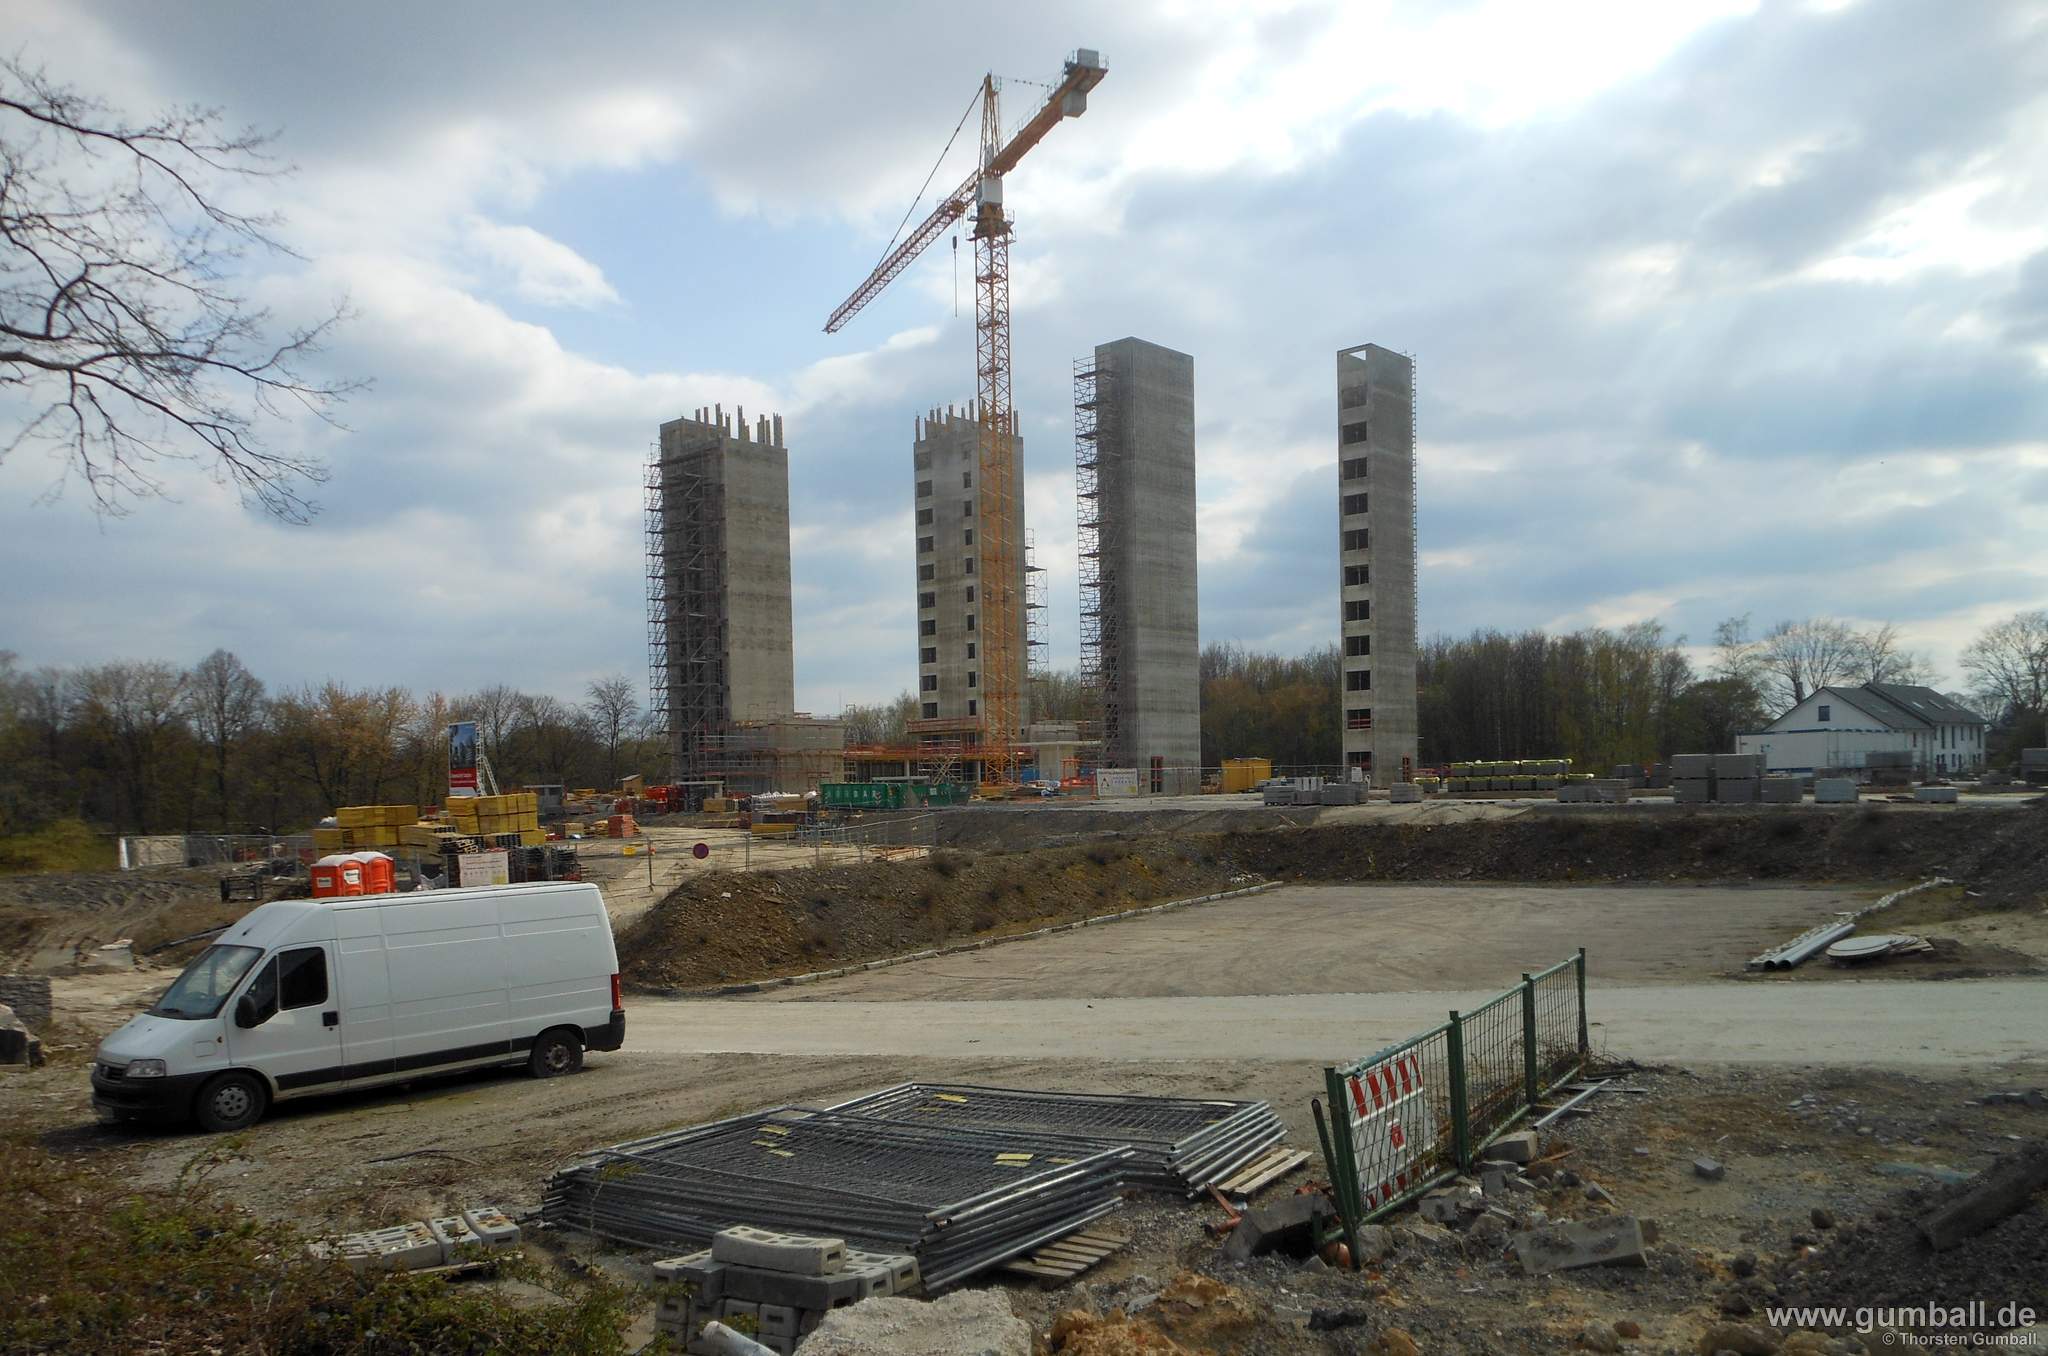 Seven Stones Baustelle, Bochum - April 2021 (14)